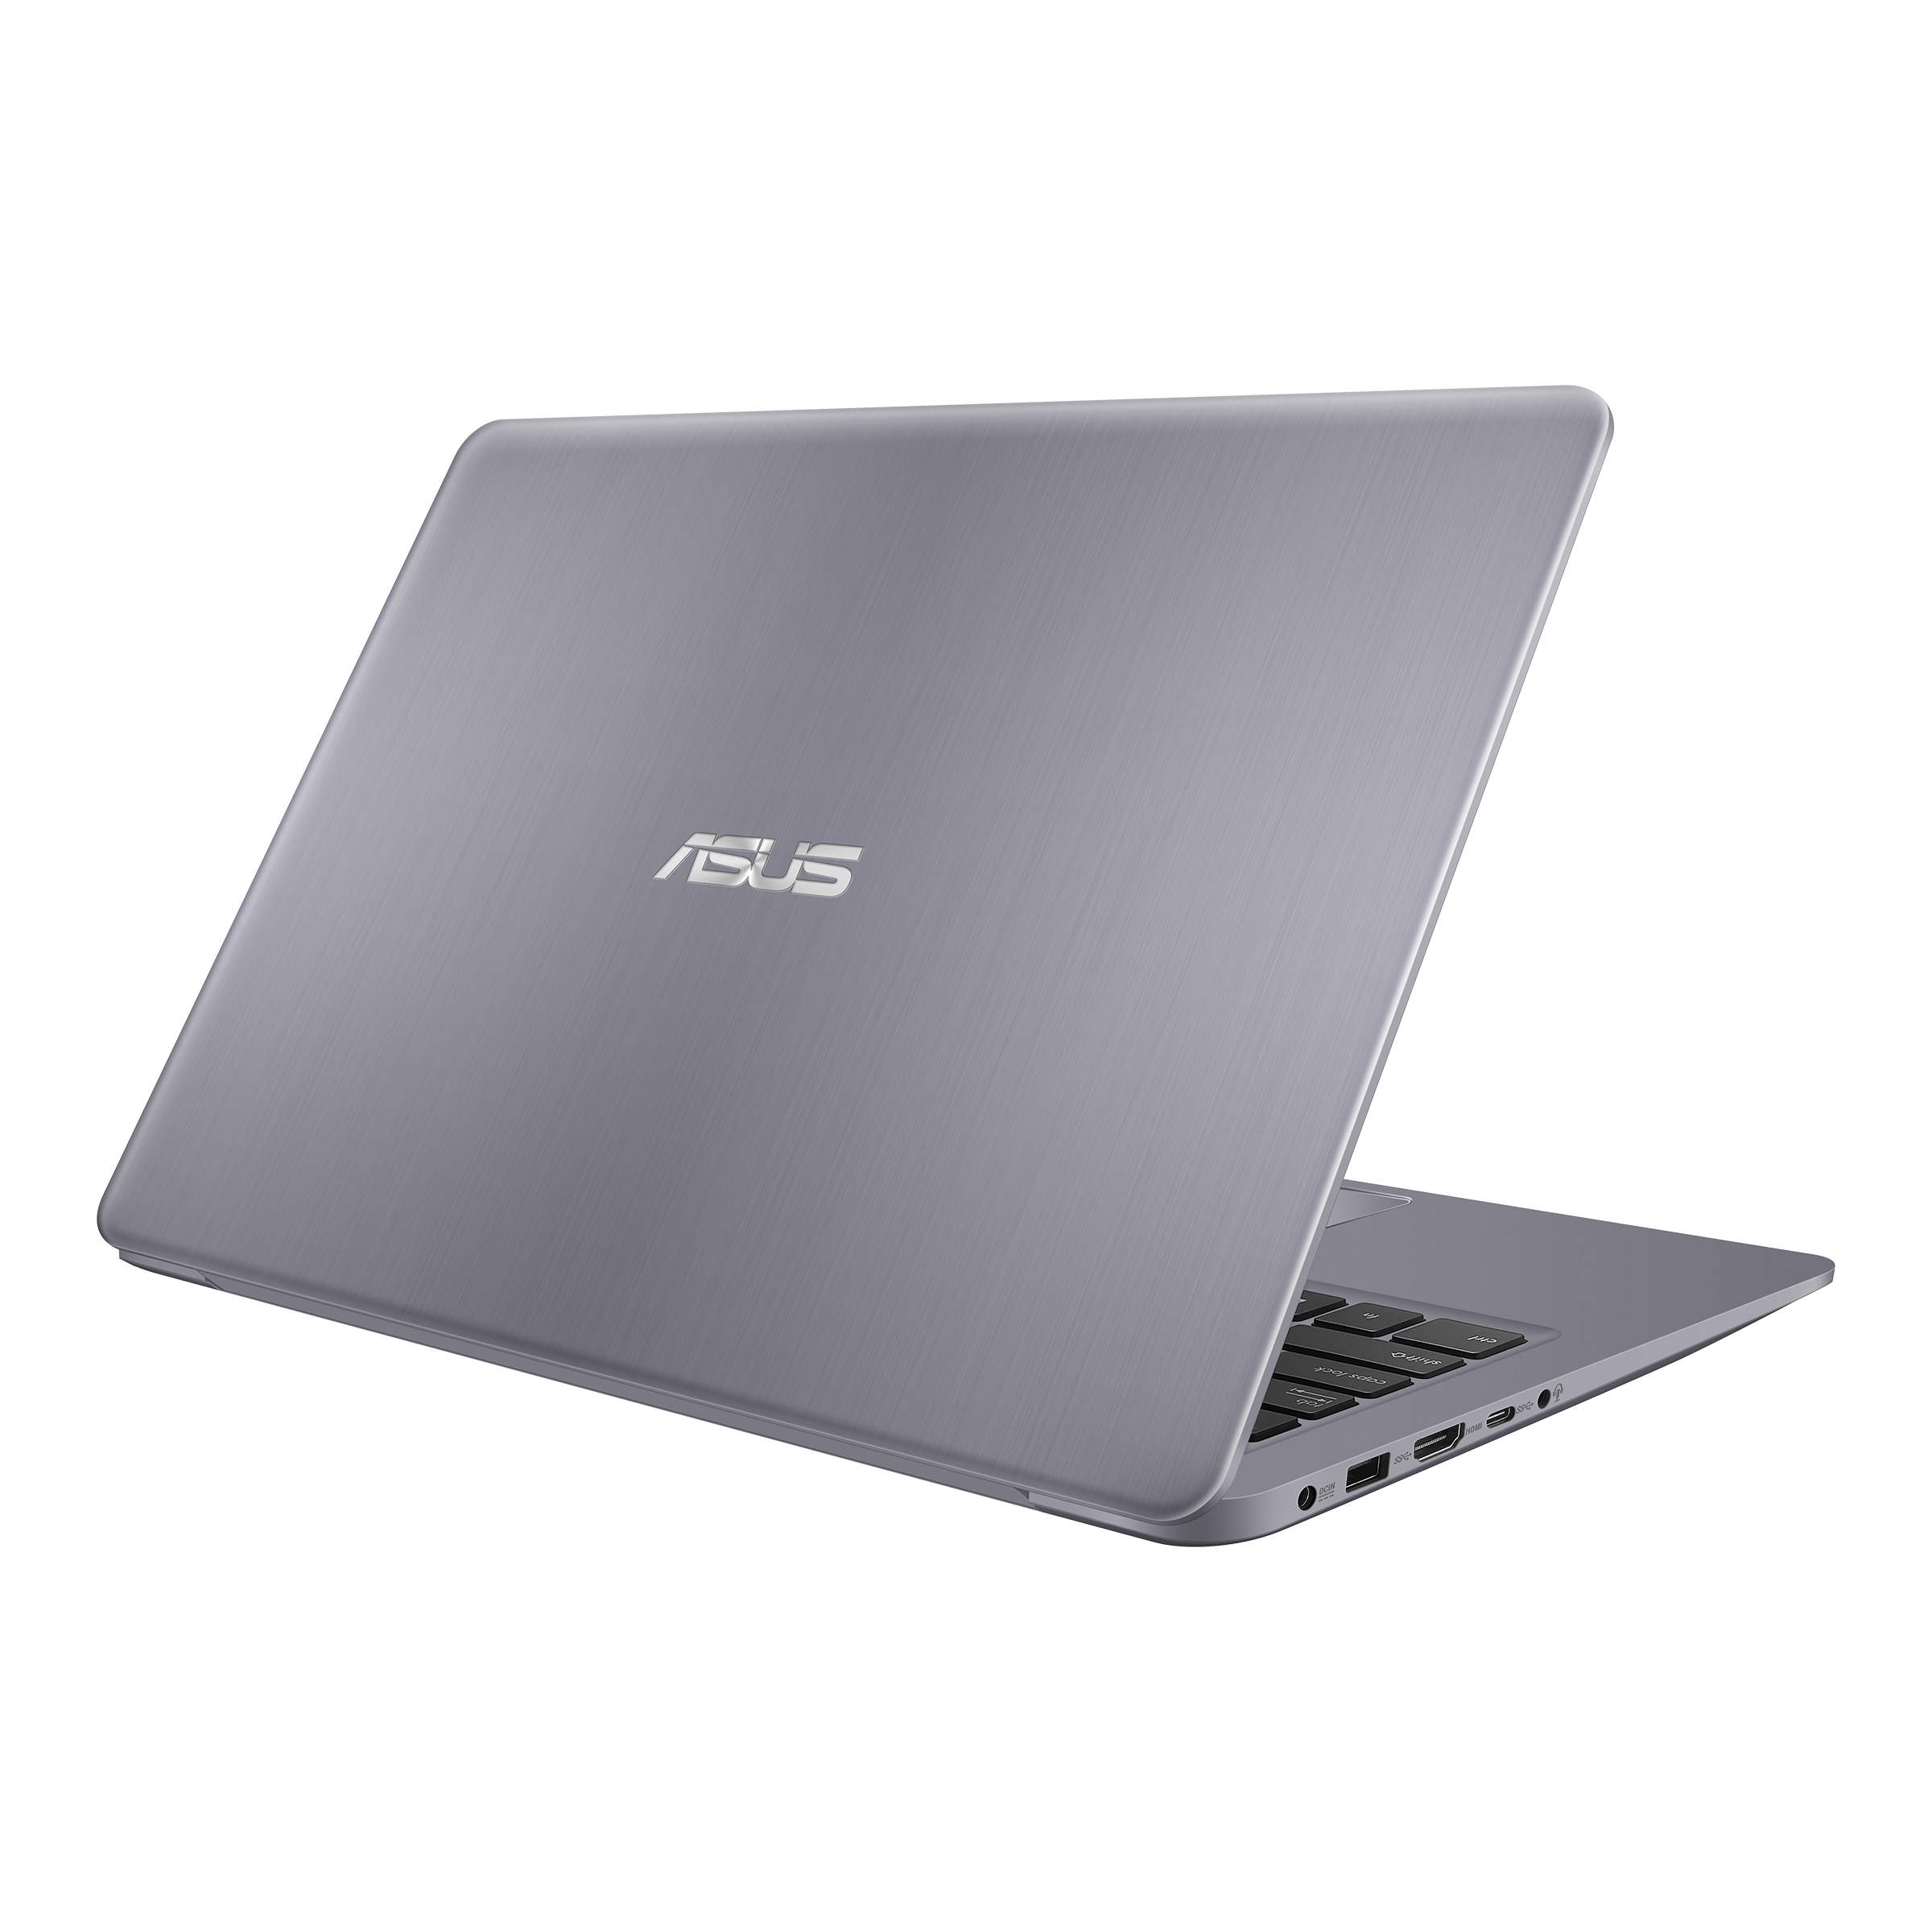 Vivobook S14 S410 Laptops For Home Asus Global